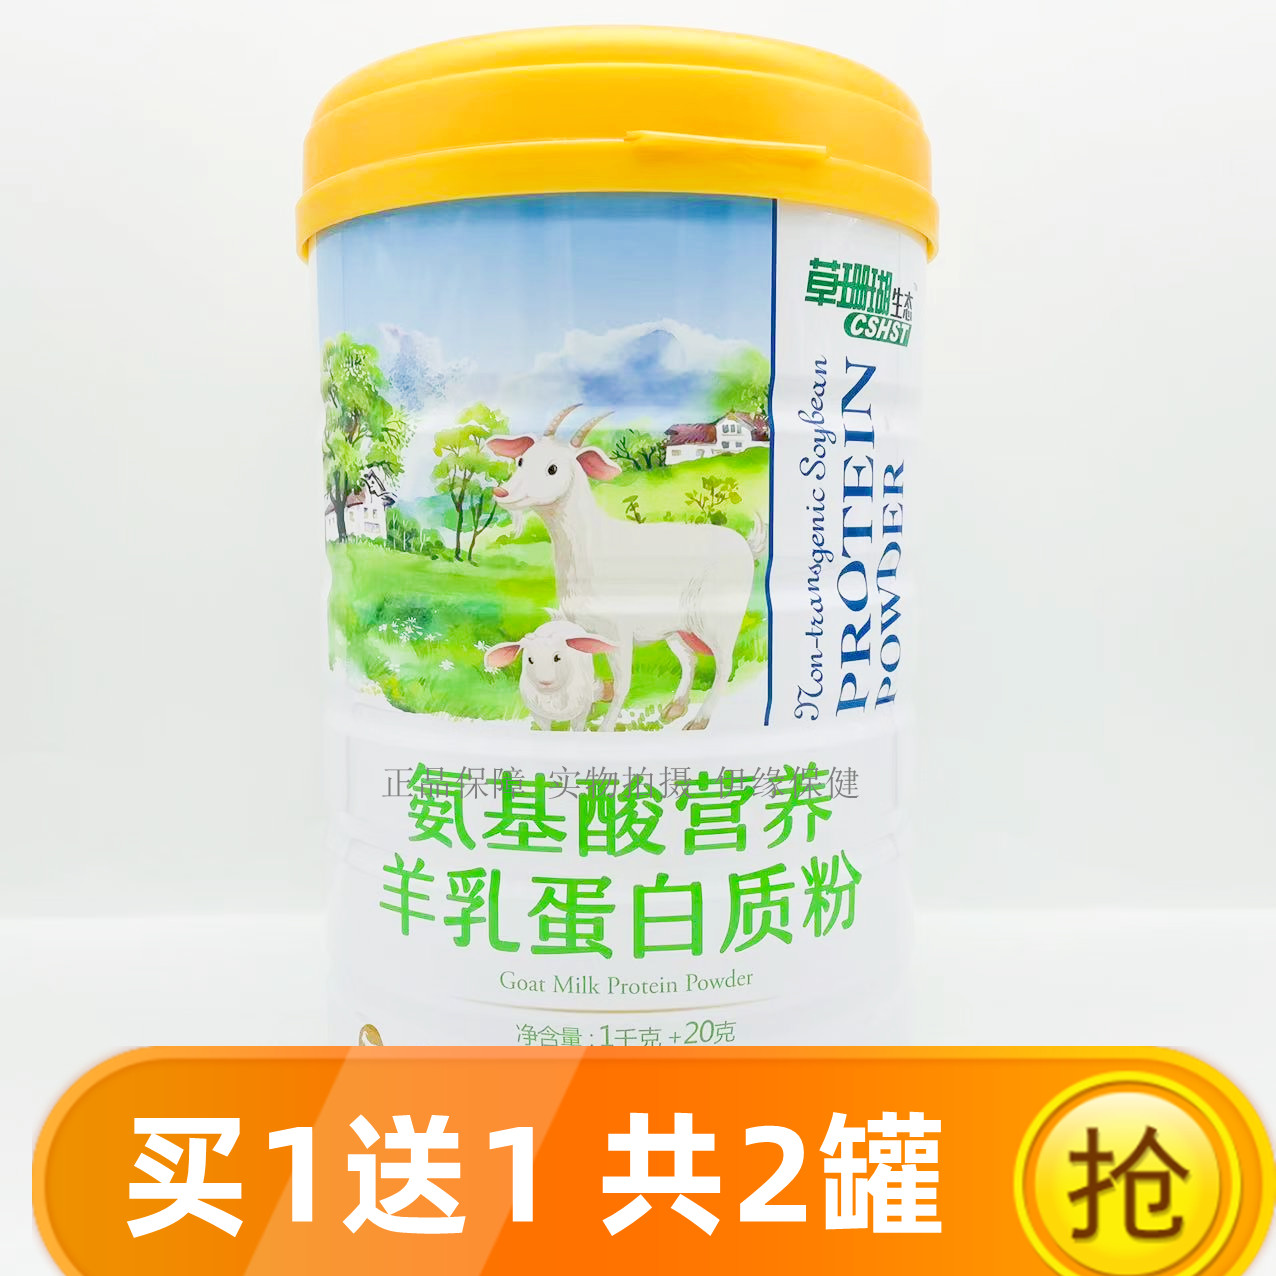 买1罐送1罐 +礼品草珊瑚医药氨基酸营养羊乳蛋白质粉草珊瑚生态